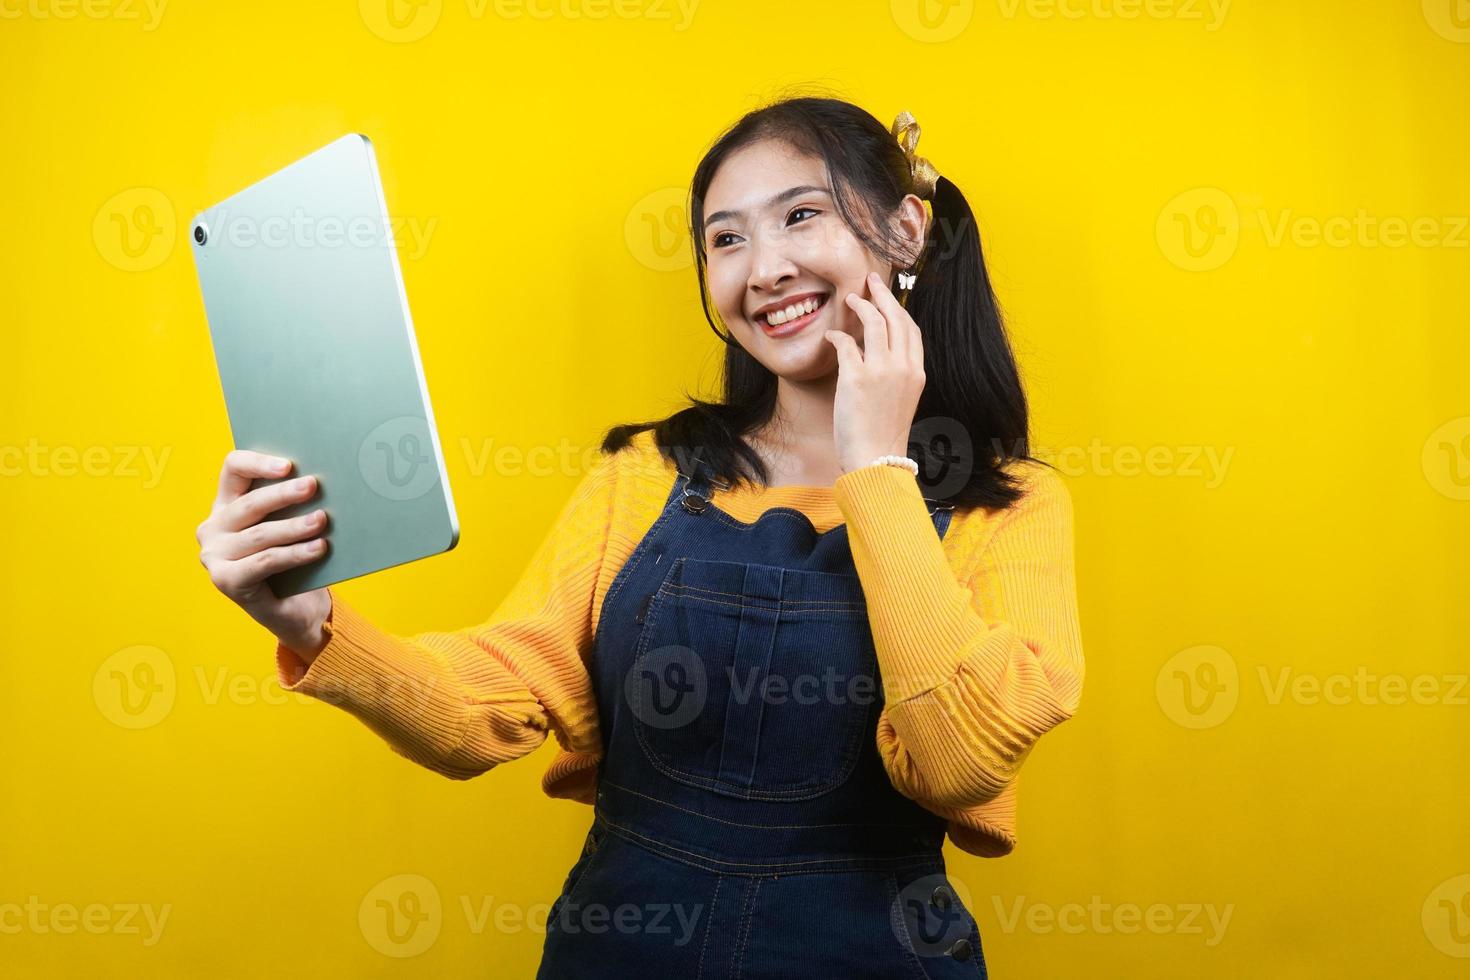 jolie et mignonne jeune femme joyeuse, confiante, tenant une tablette à la main, présentant quelque chose, faisant la promotion du produit, de la publicité, isolée photo